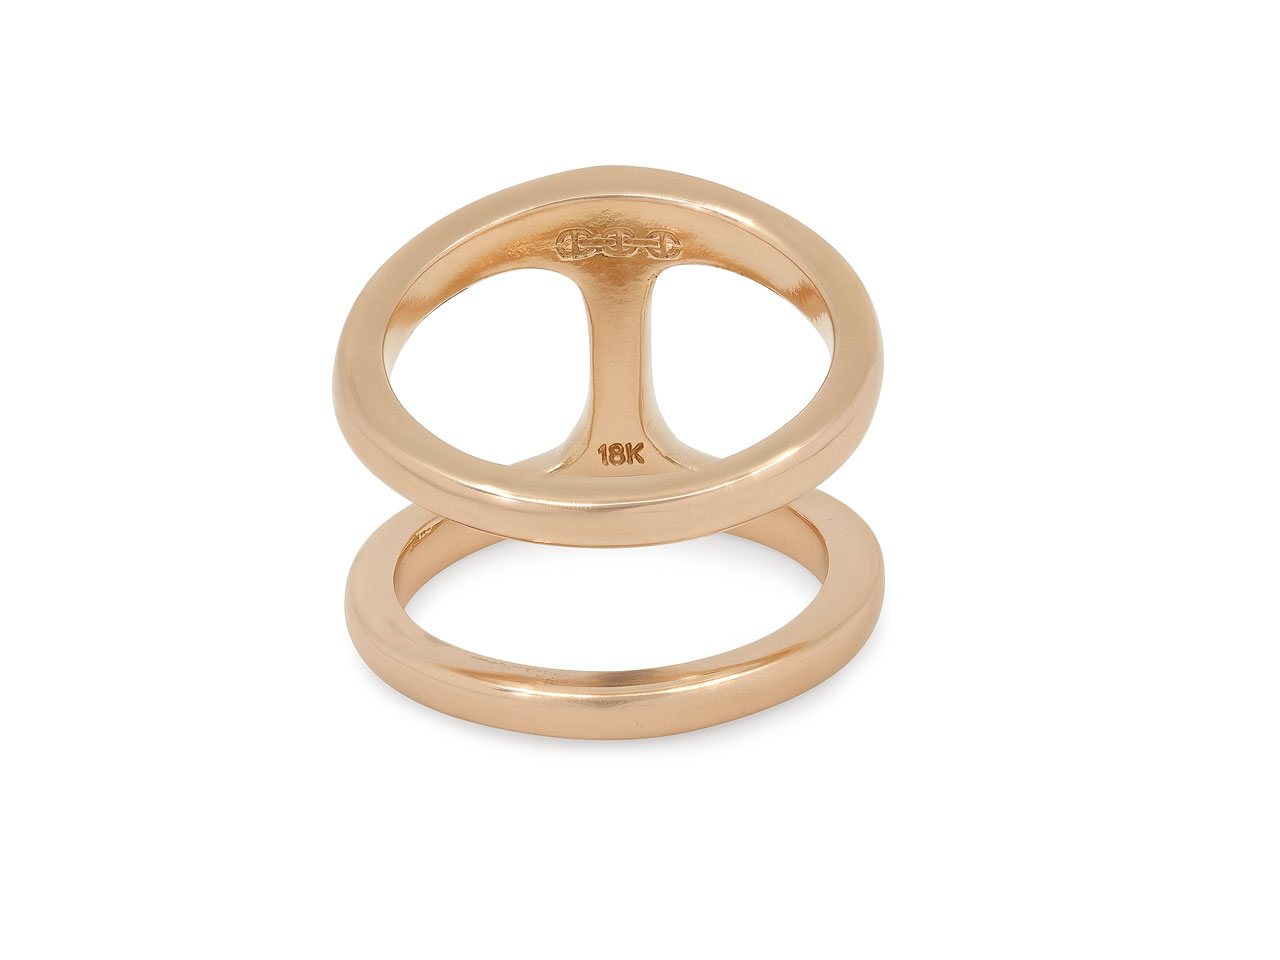 Hoorsenbuhs 'Dame Phantom' Ring in 18K Rose Gold